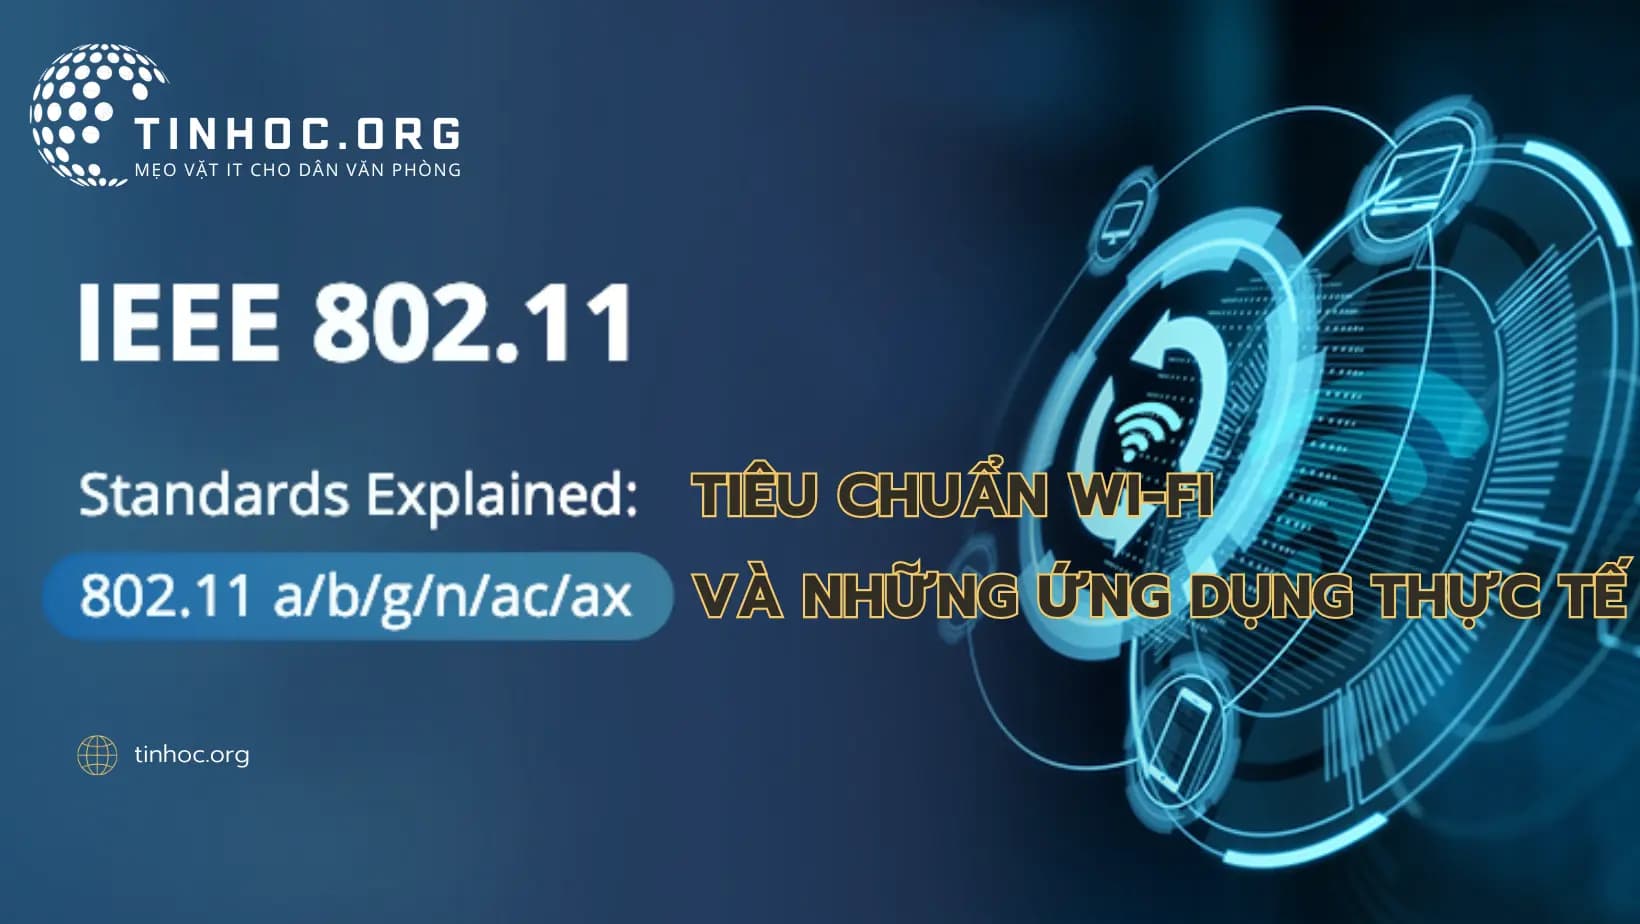 IEEE 802.11 là một tiêu chuẩn truyền dẫn không dây (Wi-Fi) định rõ cách thiết bị không dây kết nối với mạng và truyền dữ liệu.